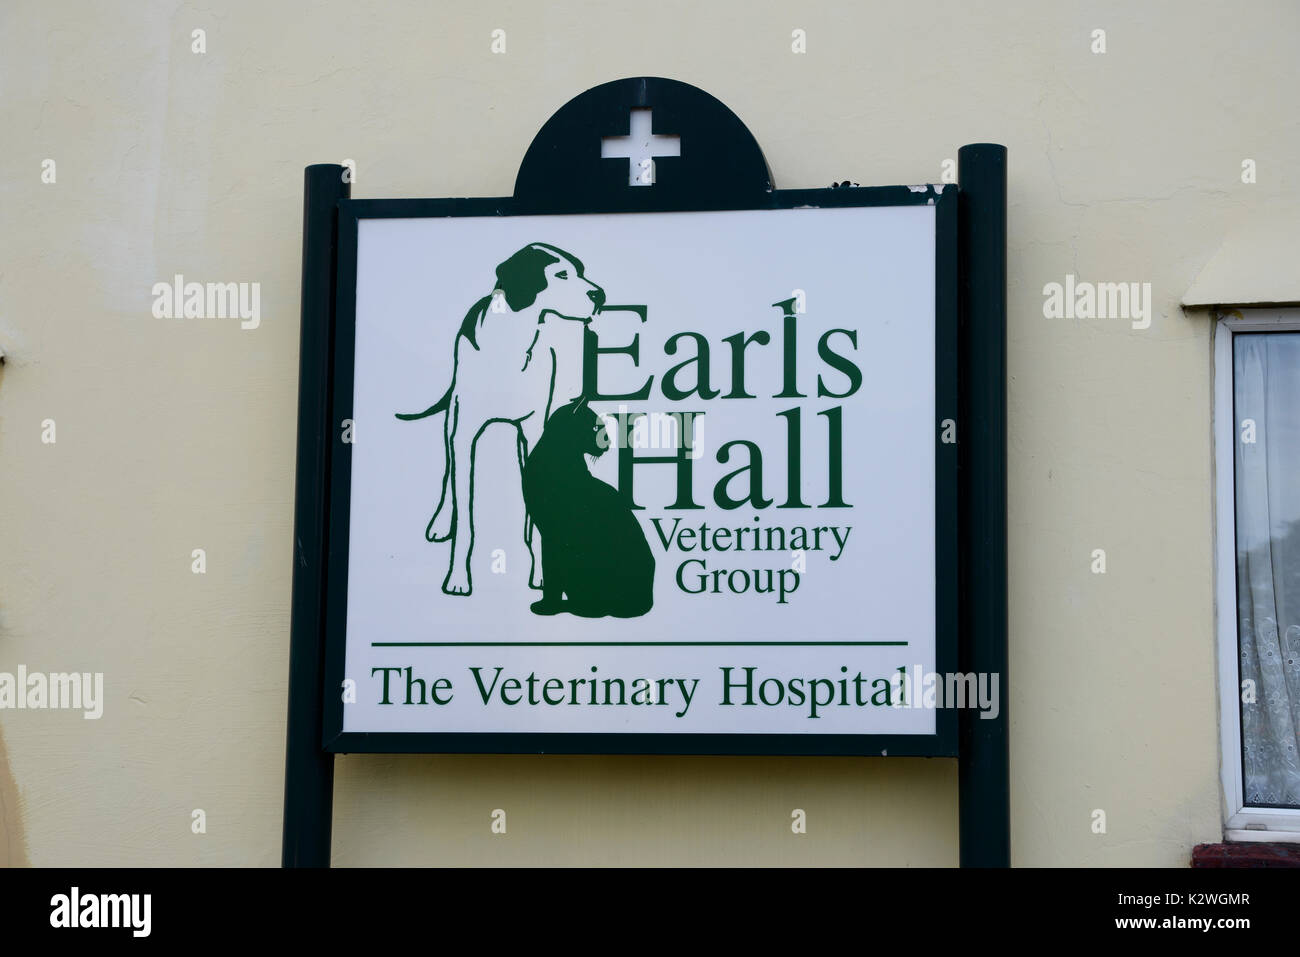 Hôpital vétérinaire Earls Hall Veterinary Group à Westcliff on Sea, Southend, Essex. Vet. Vétérinaires Banque D'Images